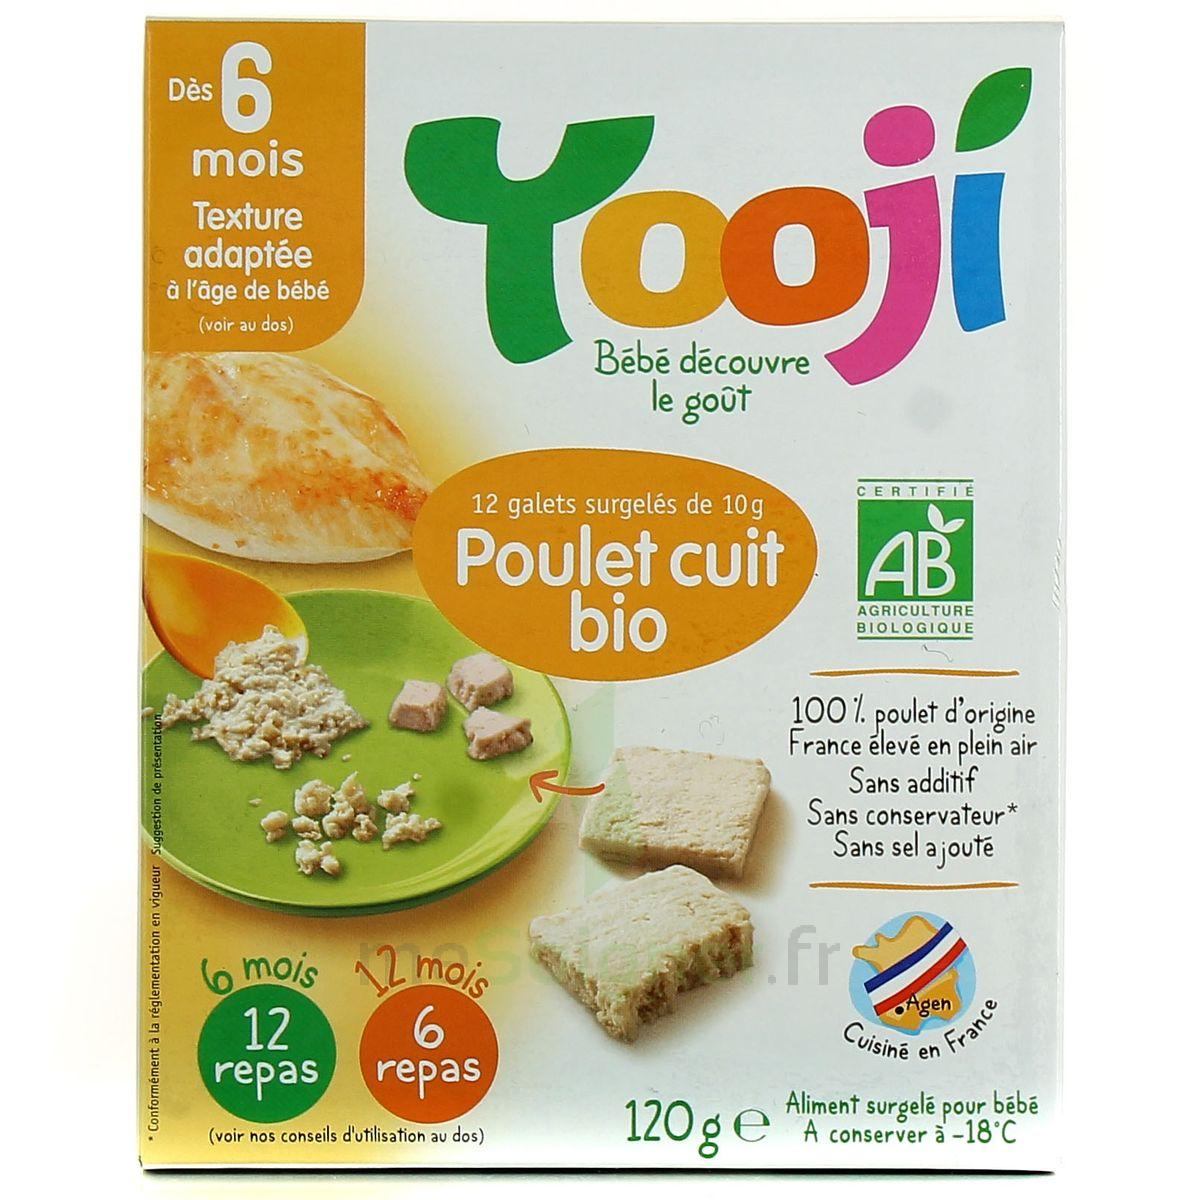 https://www.mesoigner.fr/uploads/produits/5a7d78ad2af1a-yooji-12-galets-de-poulet-bio-hache-cuit-et-surgele-a-partir-de-6.jpeg